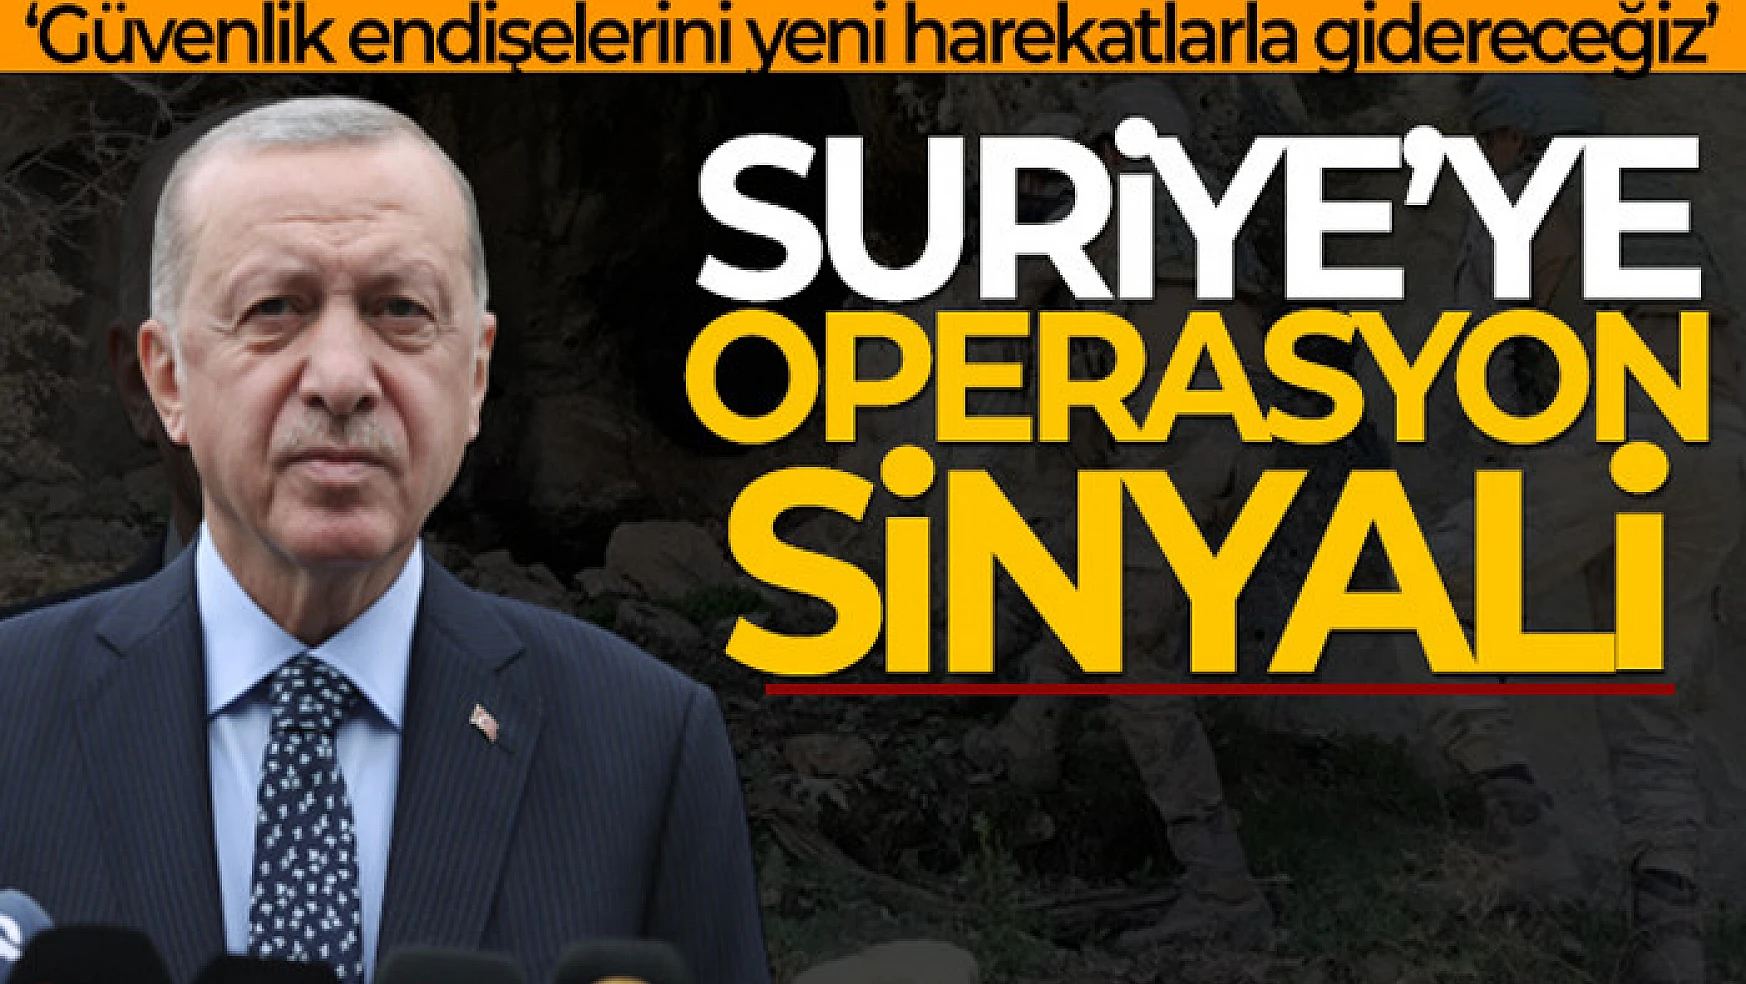 Cumhurbaşkanı Erdoğan: 'Güvenlik endişelerini yeni harekatlarla gidereceğiz'